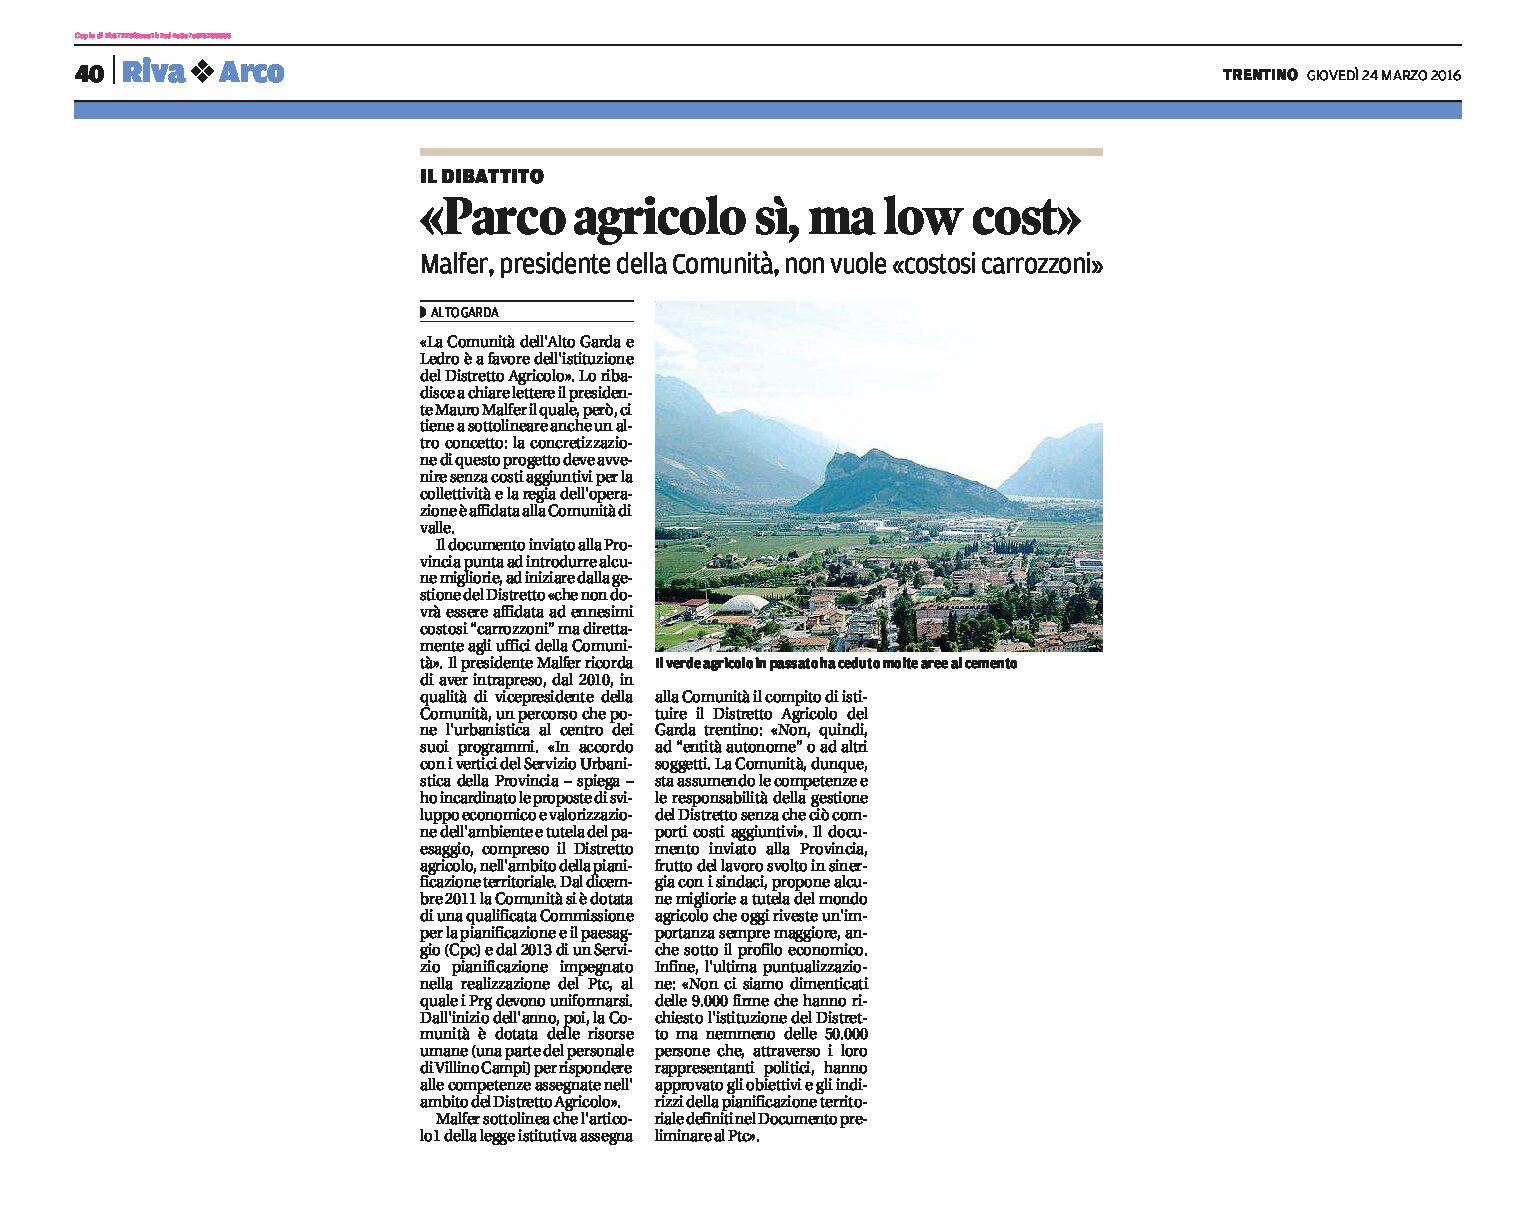 Alto Garda, Parco agricolo: sì, ma low cost.